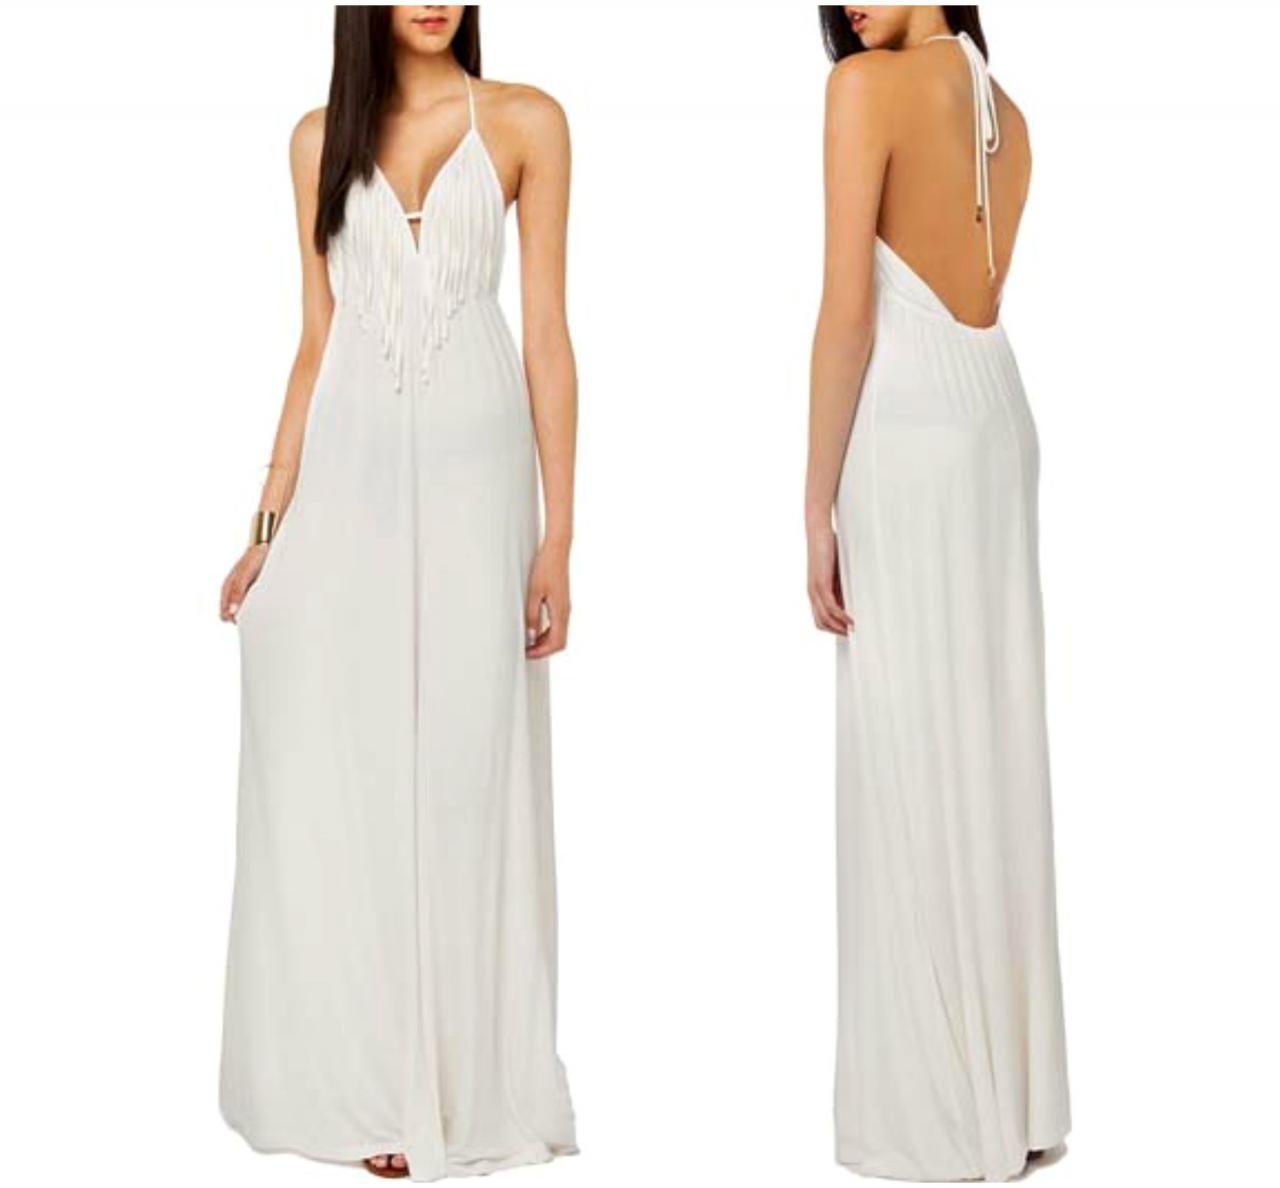 Elegant White Halter Long Dress